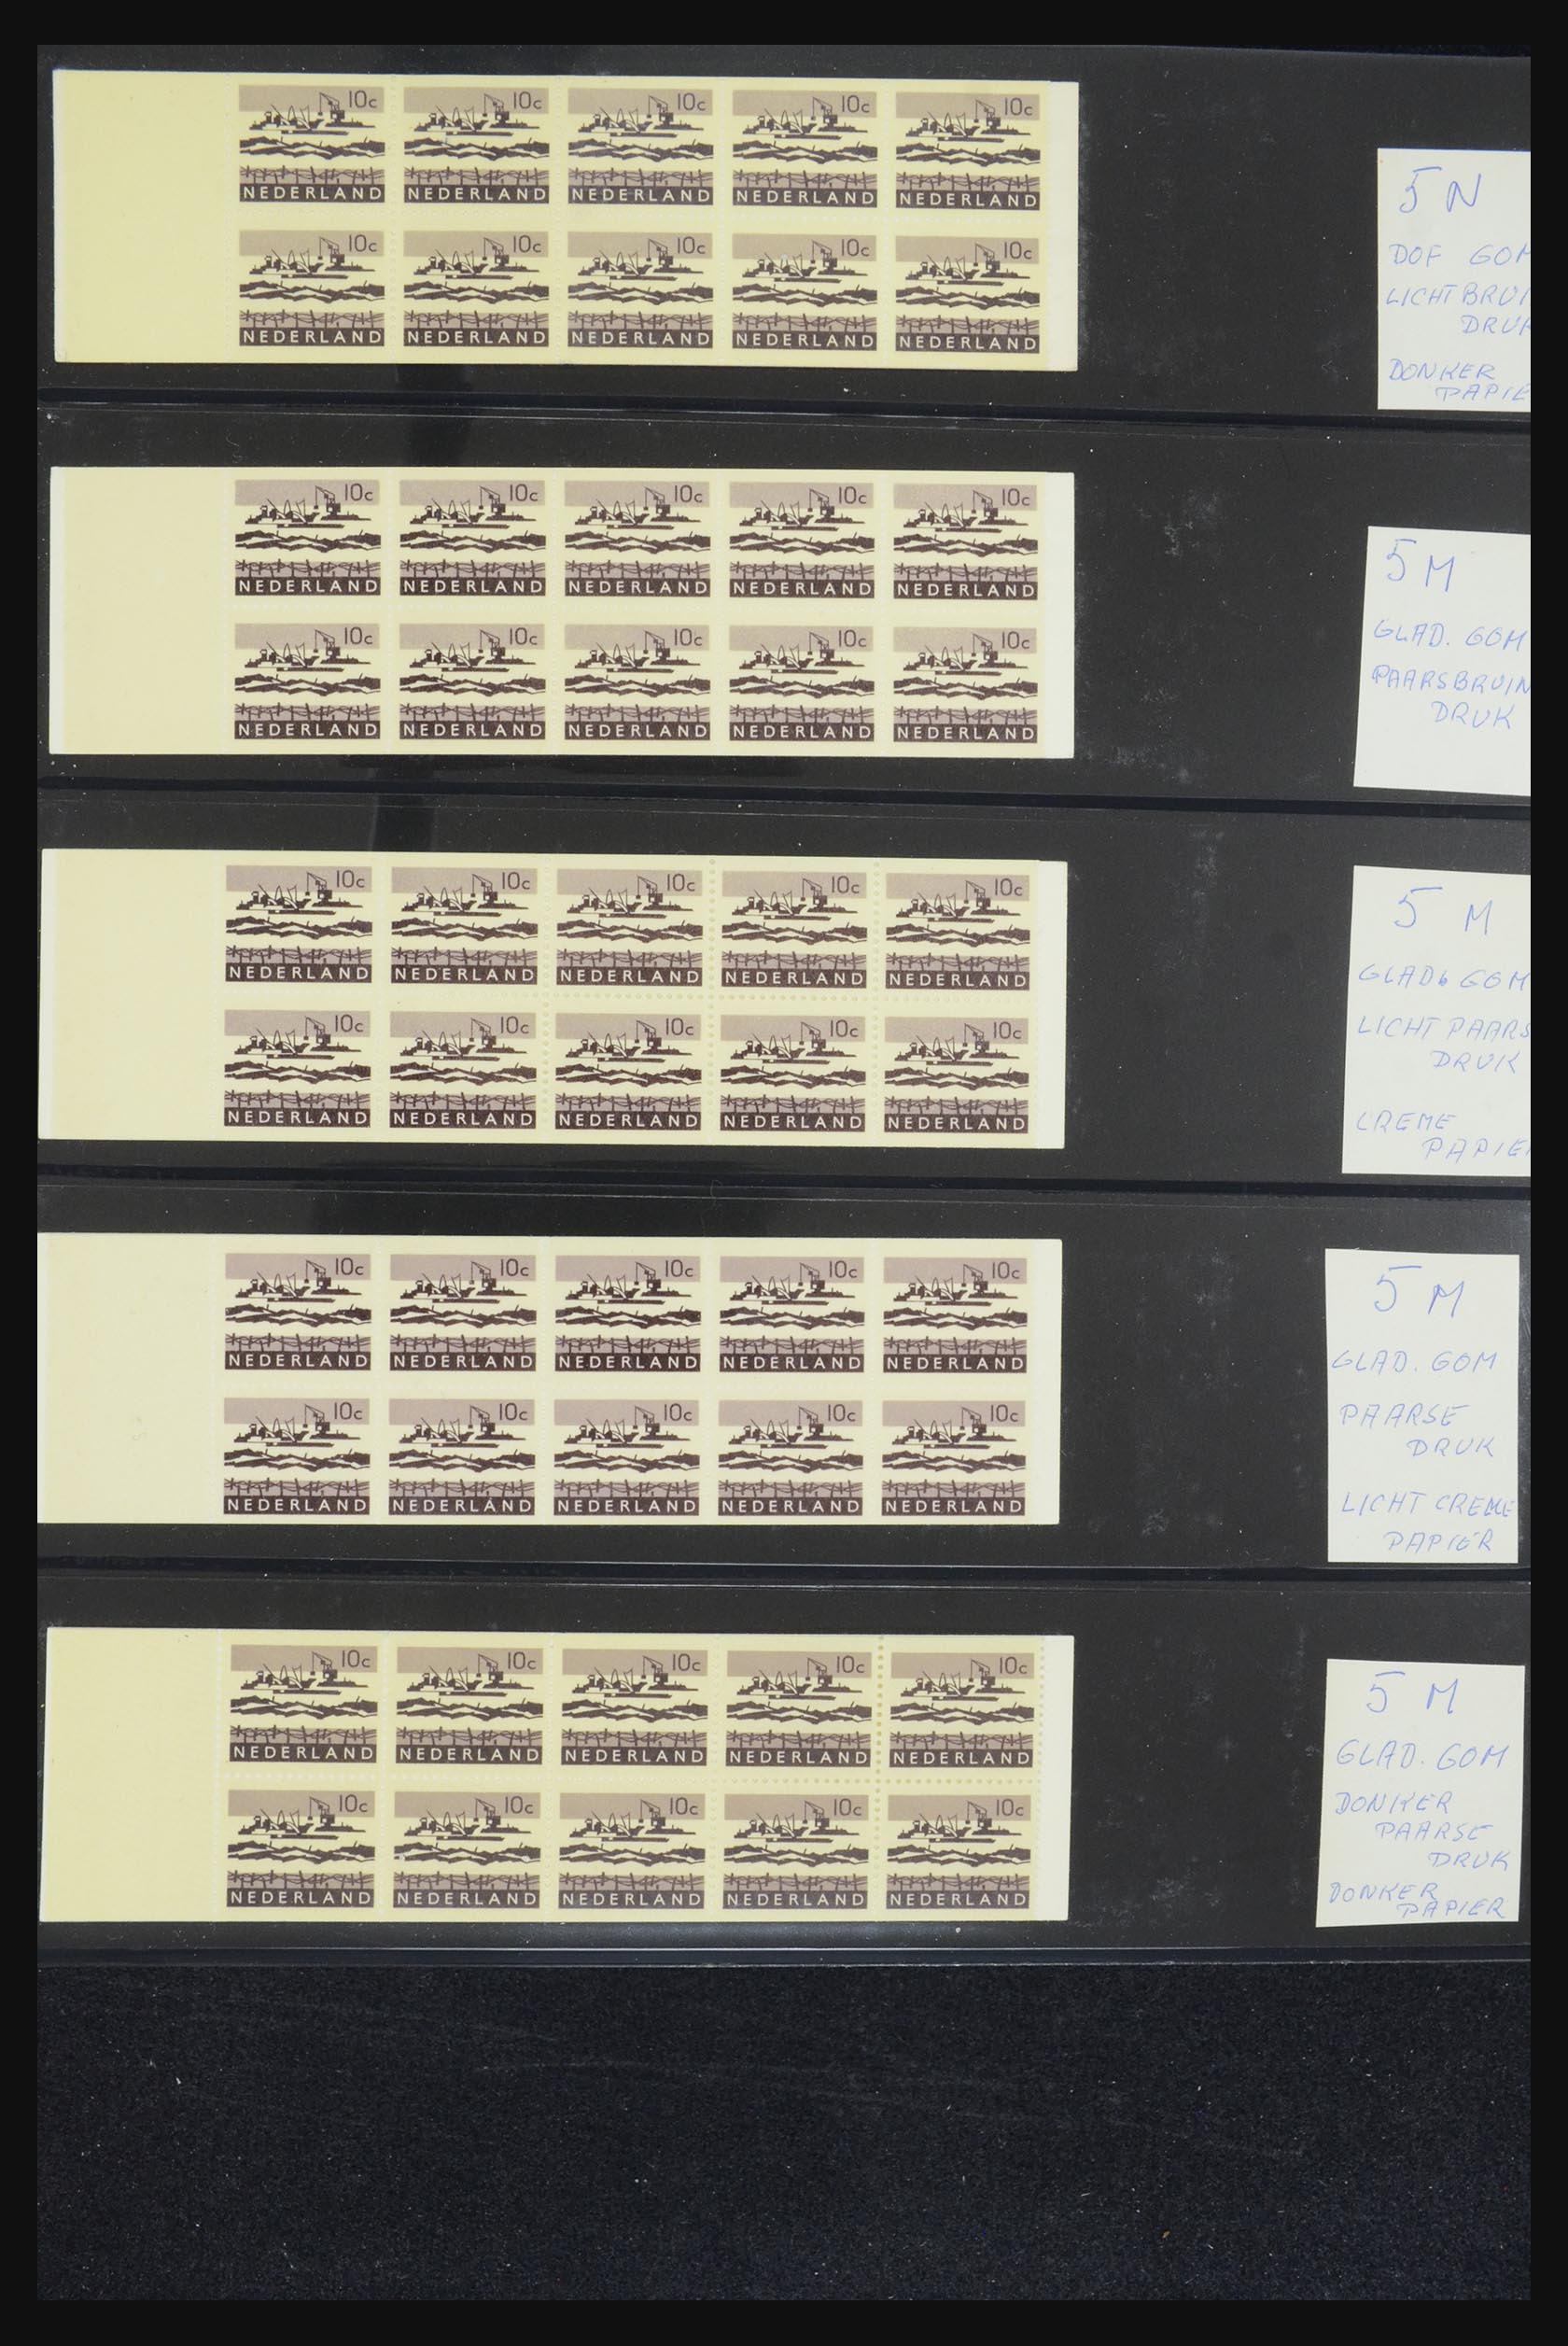 32407 005 - 32407 Netherlands stamp booklets 1964-2003.